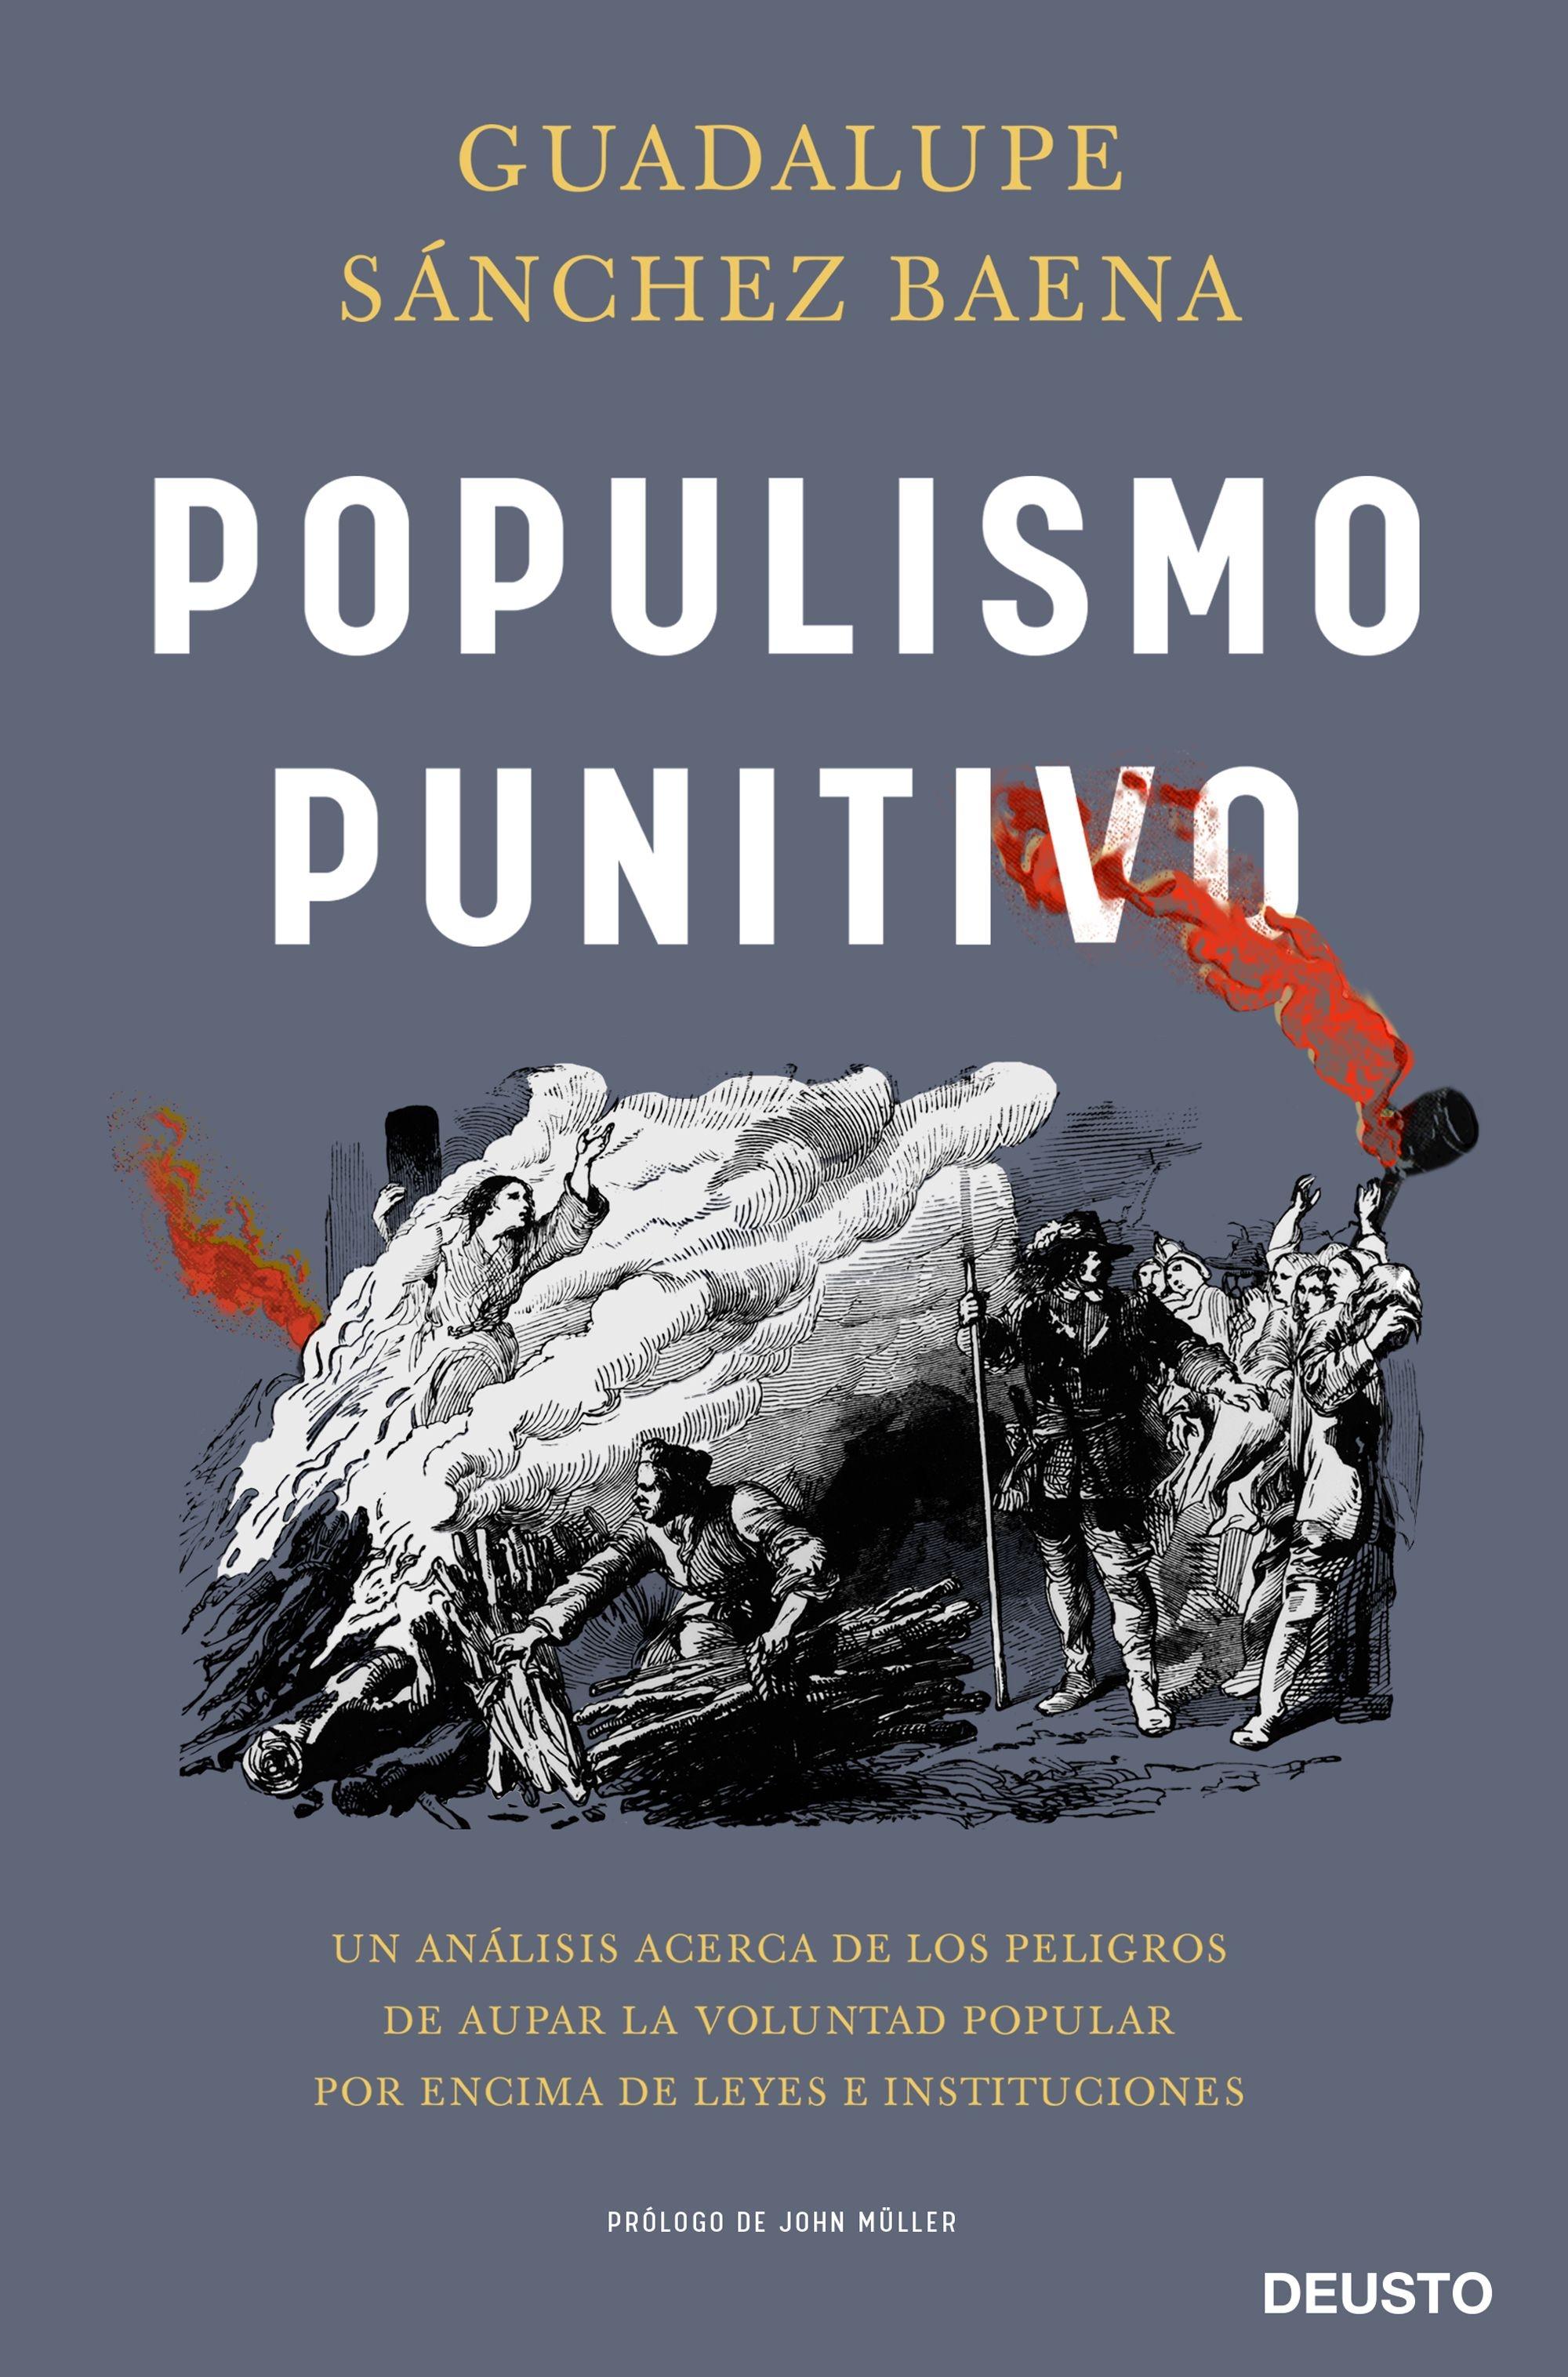 Populismo punitivo "Un análisis acerca de los peligros de aupar la voluntad popular por enci"